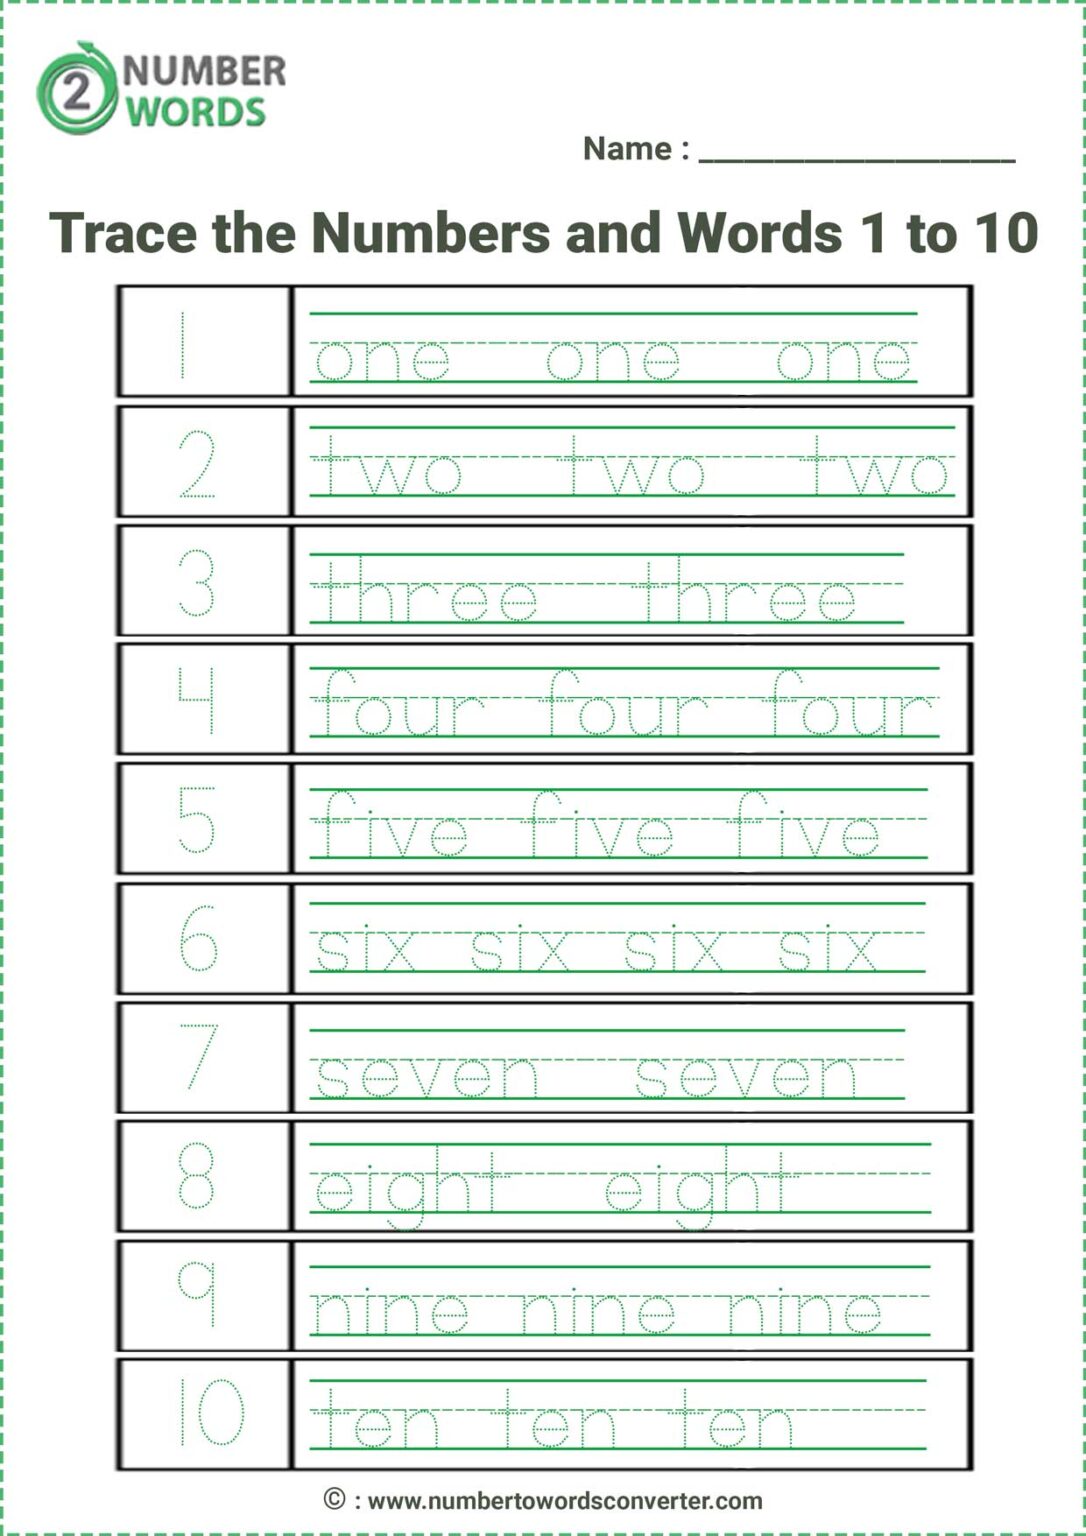 spelling-numbers-1-100-worksheet